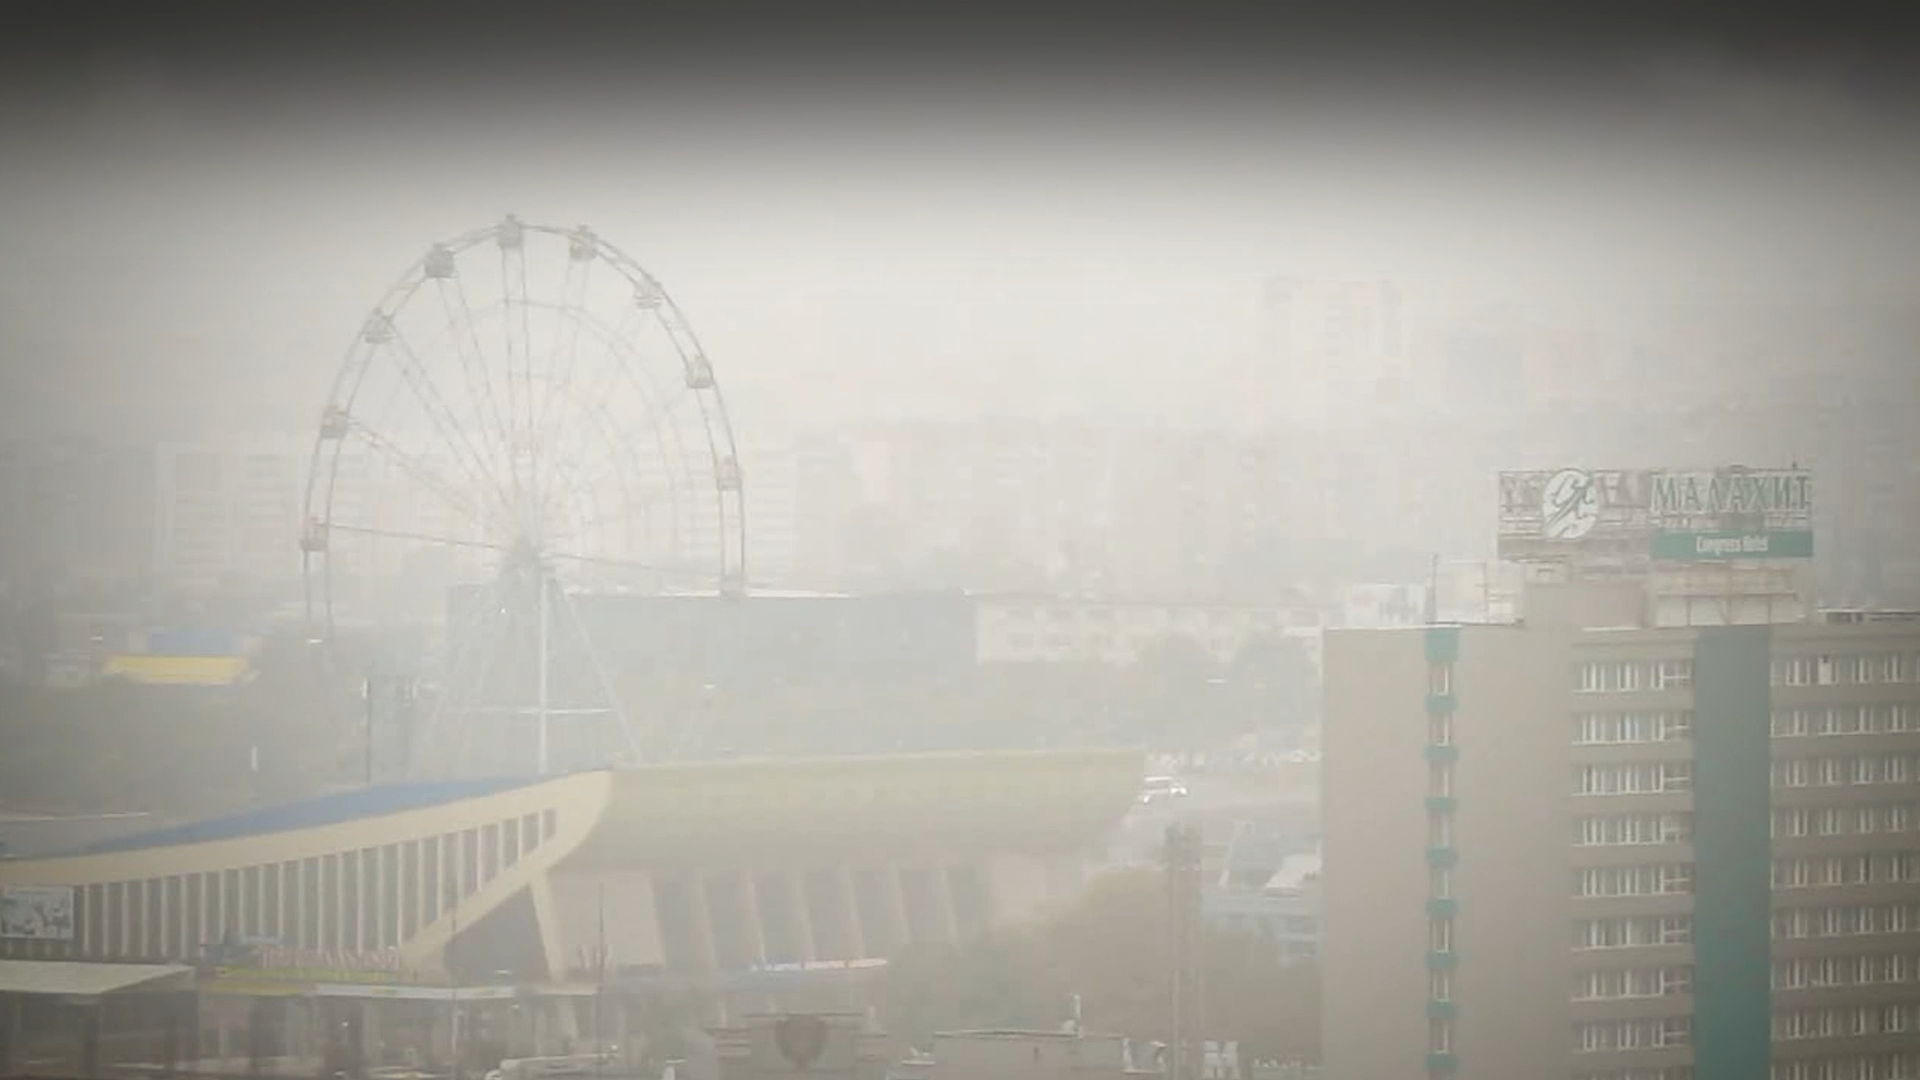 "Солнца не видно": Челябинск заволокло смогом от лесных пожаров в Якутии